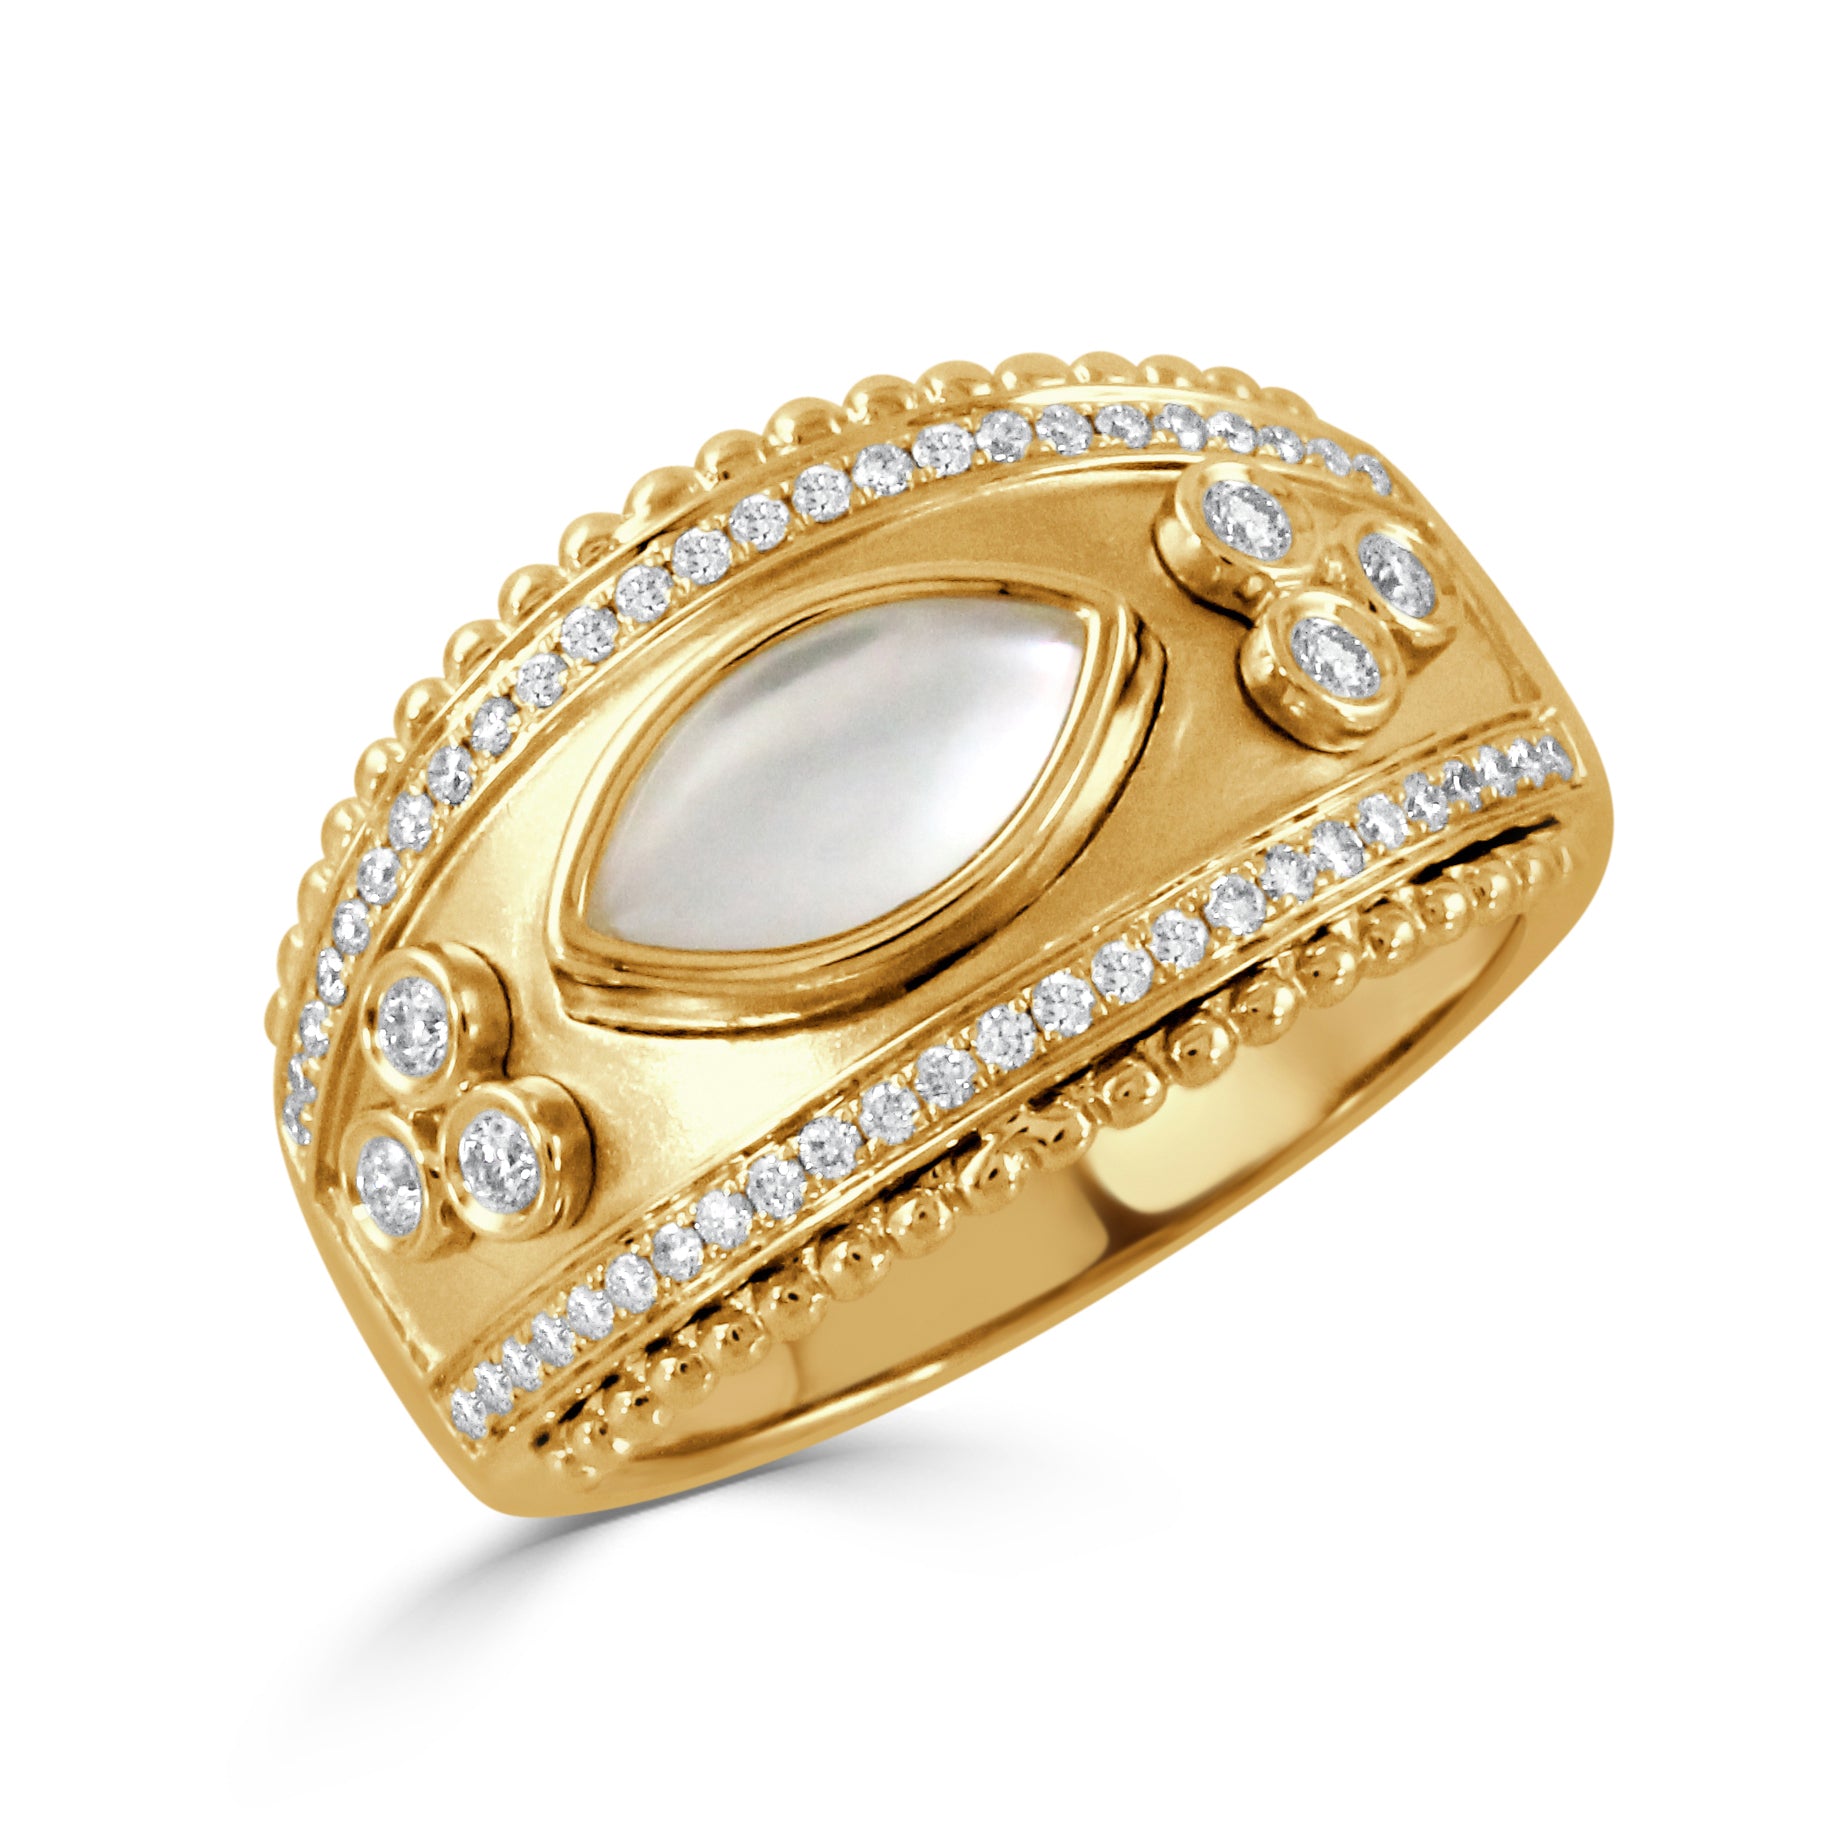 Byzantine Ring